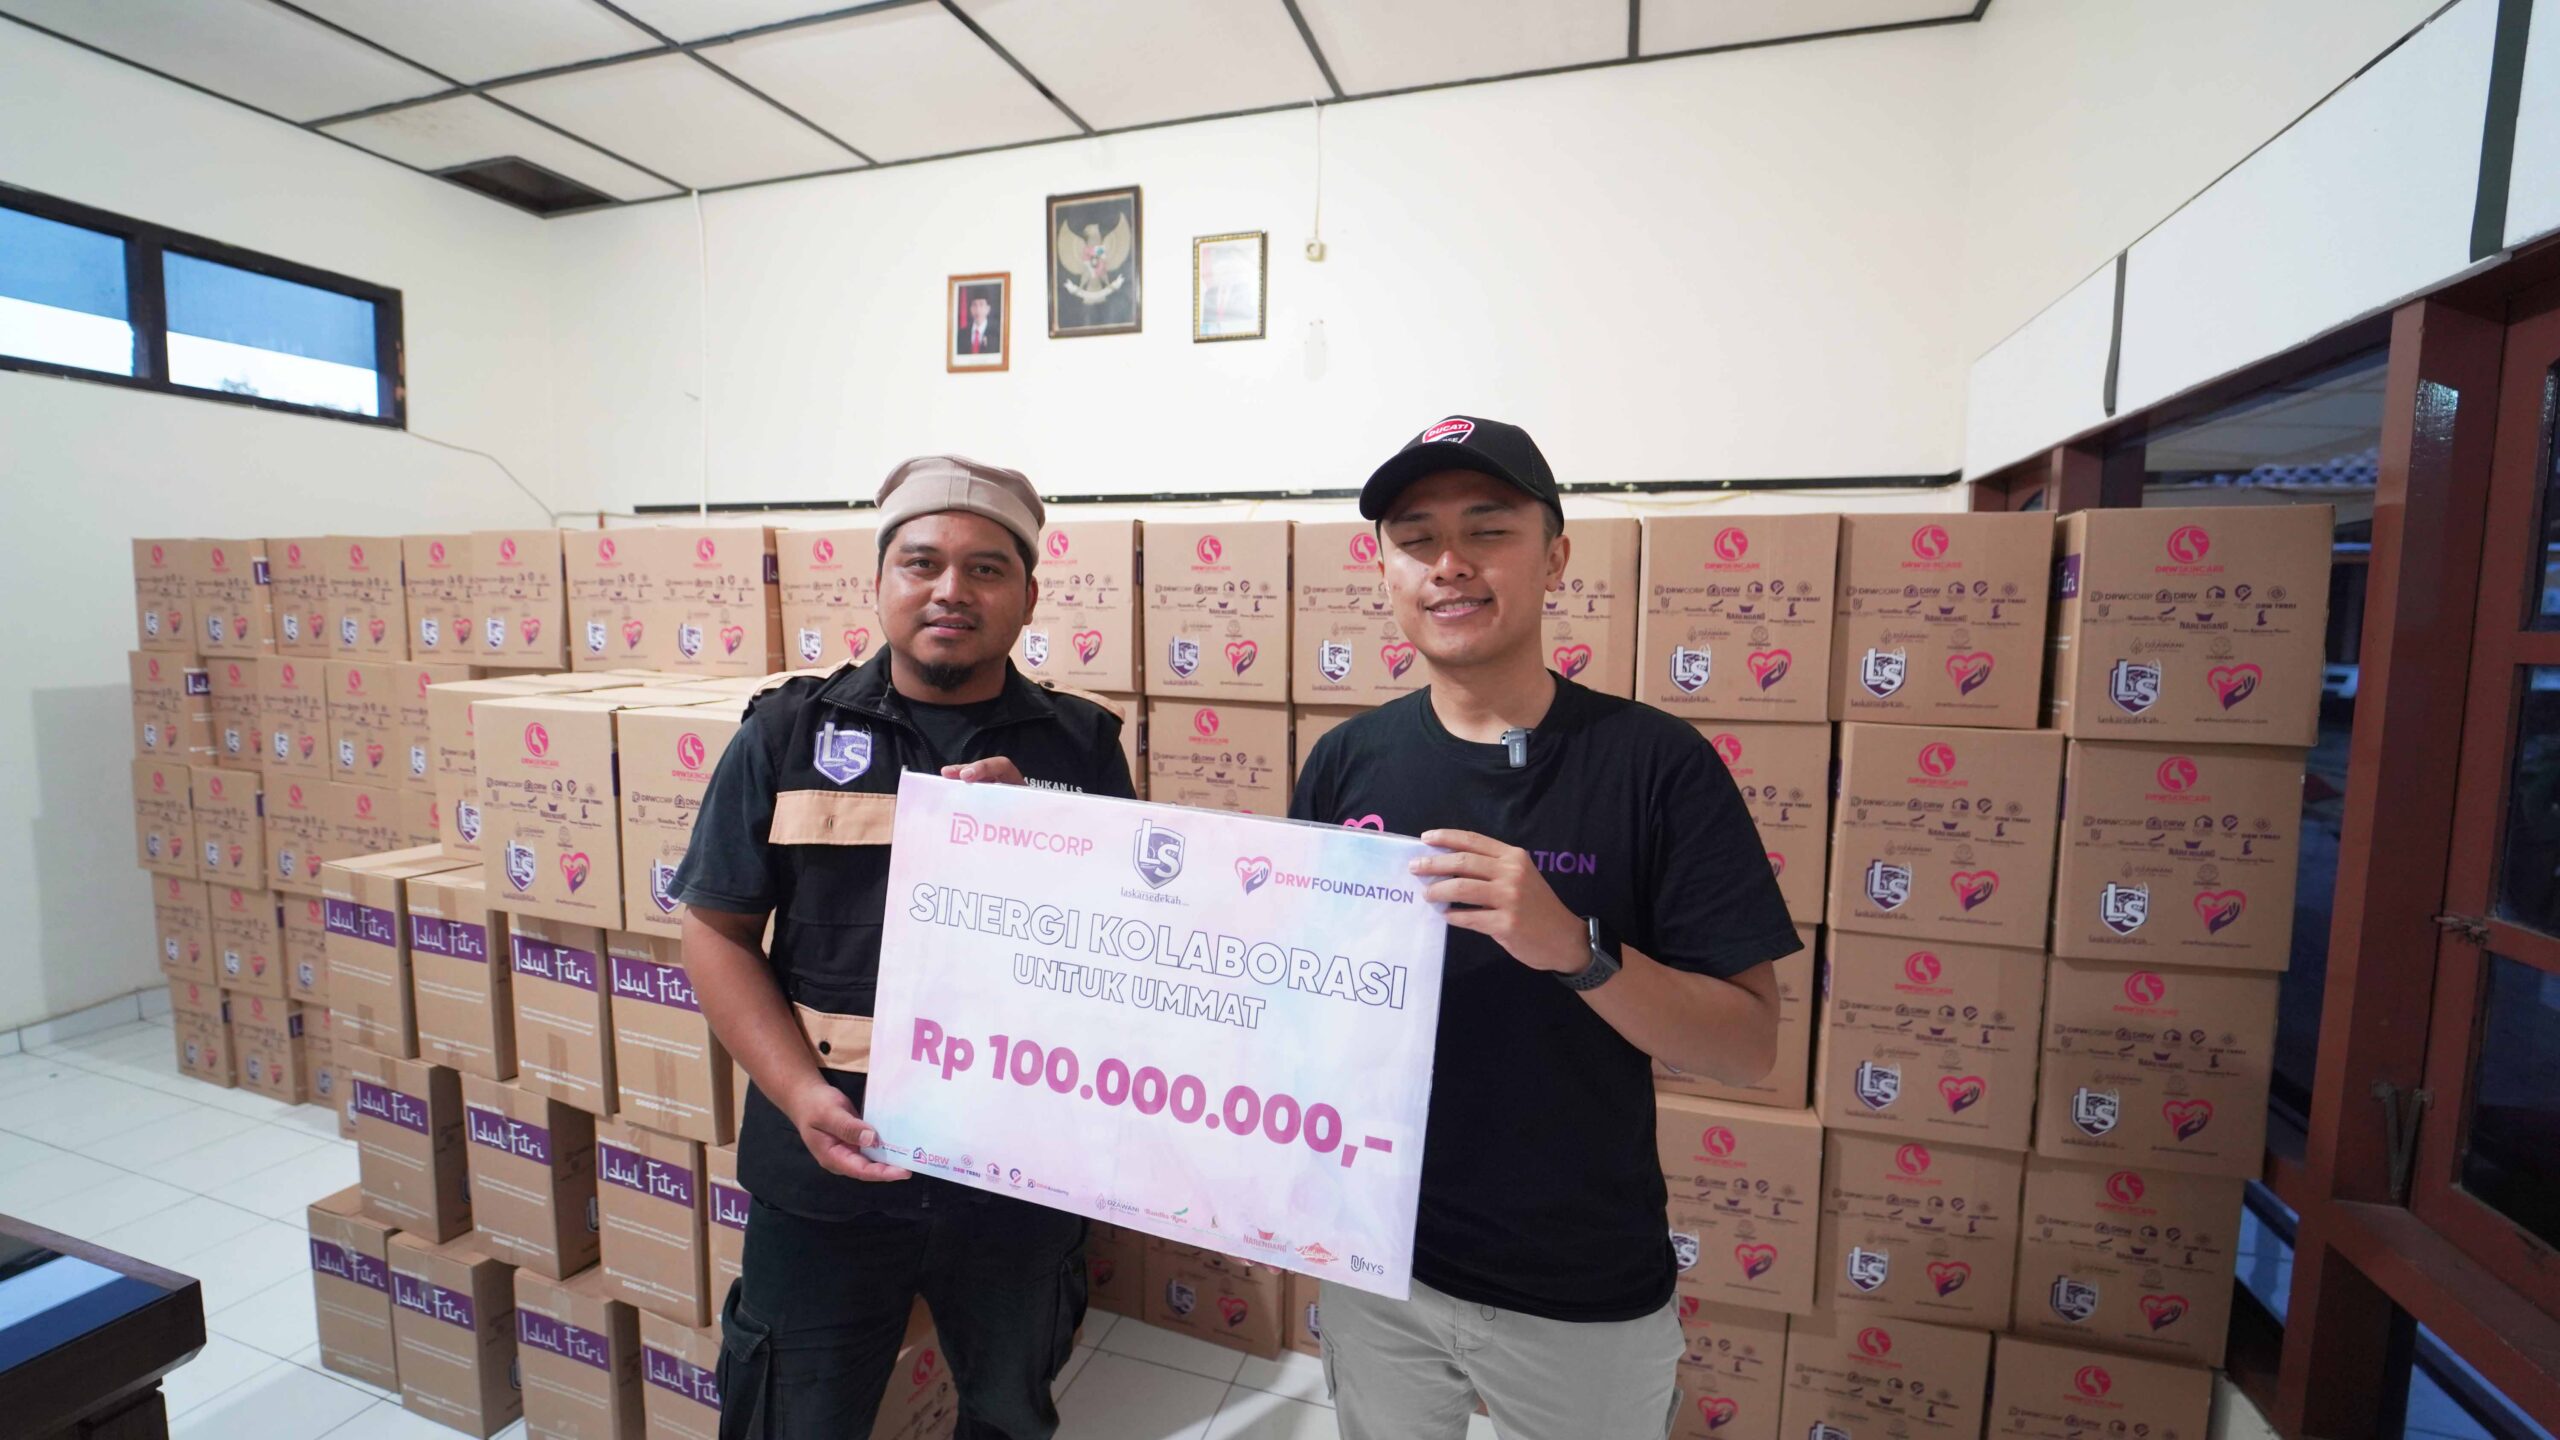 Kolaborasi dengan Laskar Sedekah Jogja, DRW Foundation Donasikan 100 Juta Rupiah